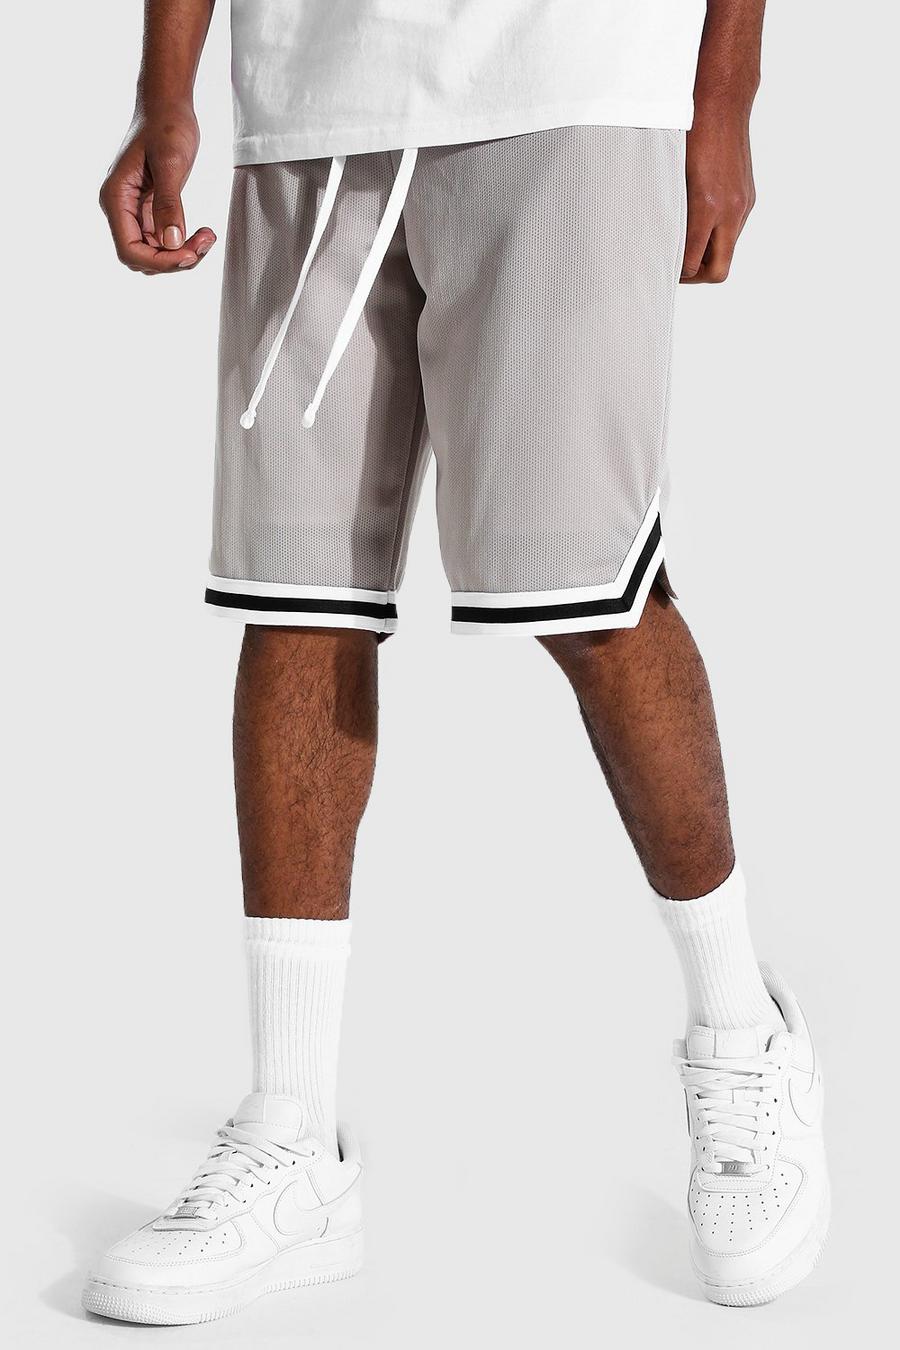 Pantalones cortos de baloncesto con cinta Airtex Tall, Gris piedra image number 1